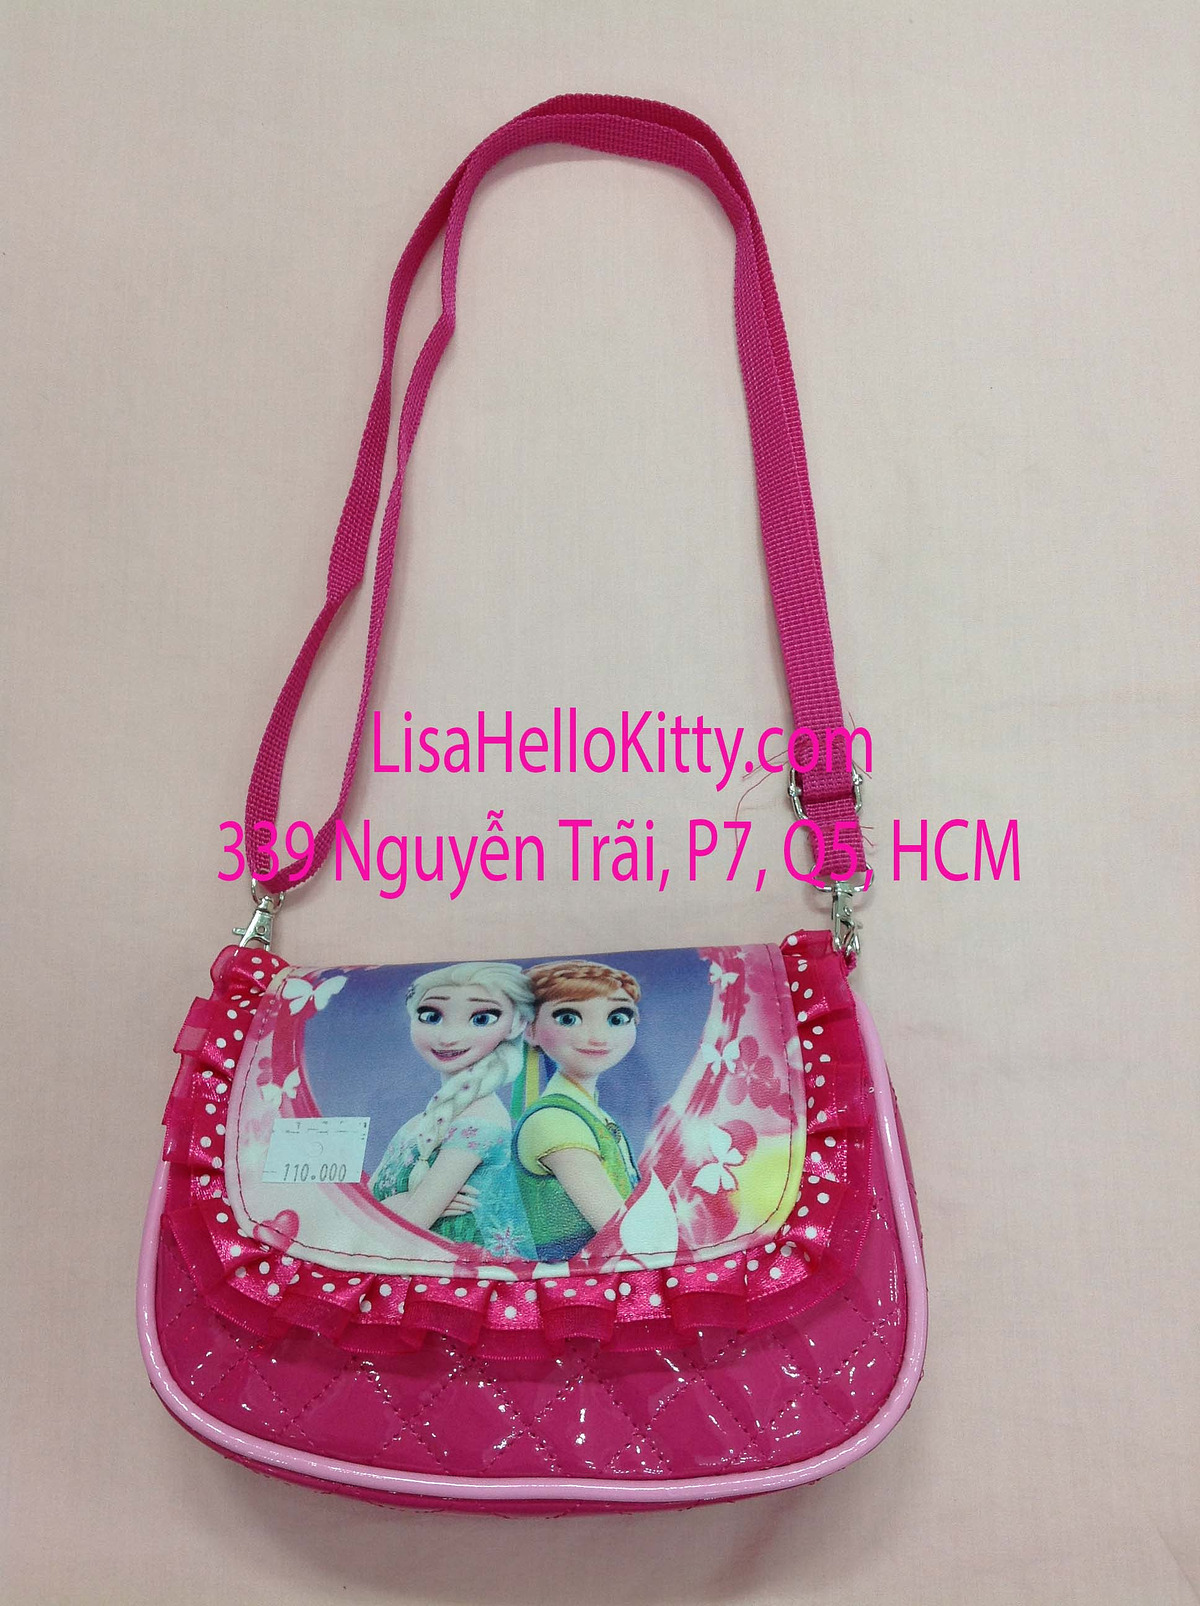 Lisa Shop - Túi xách, túi đeo chéo Hello Kitty công chúa Elsa cho bé